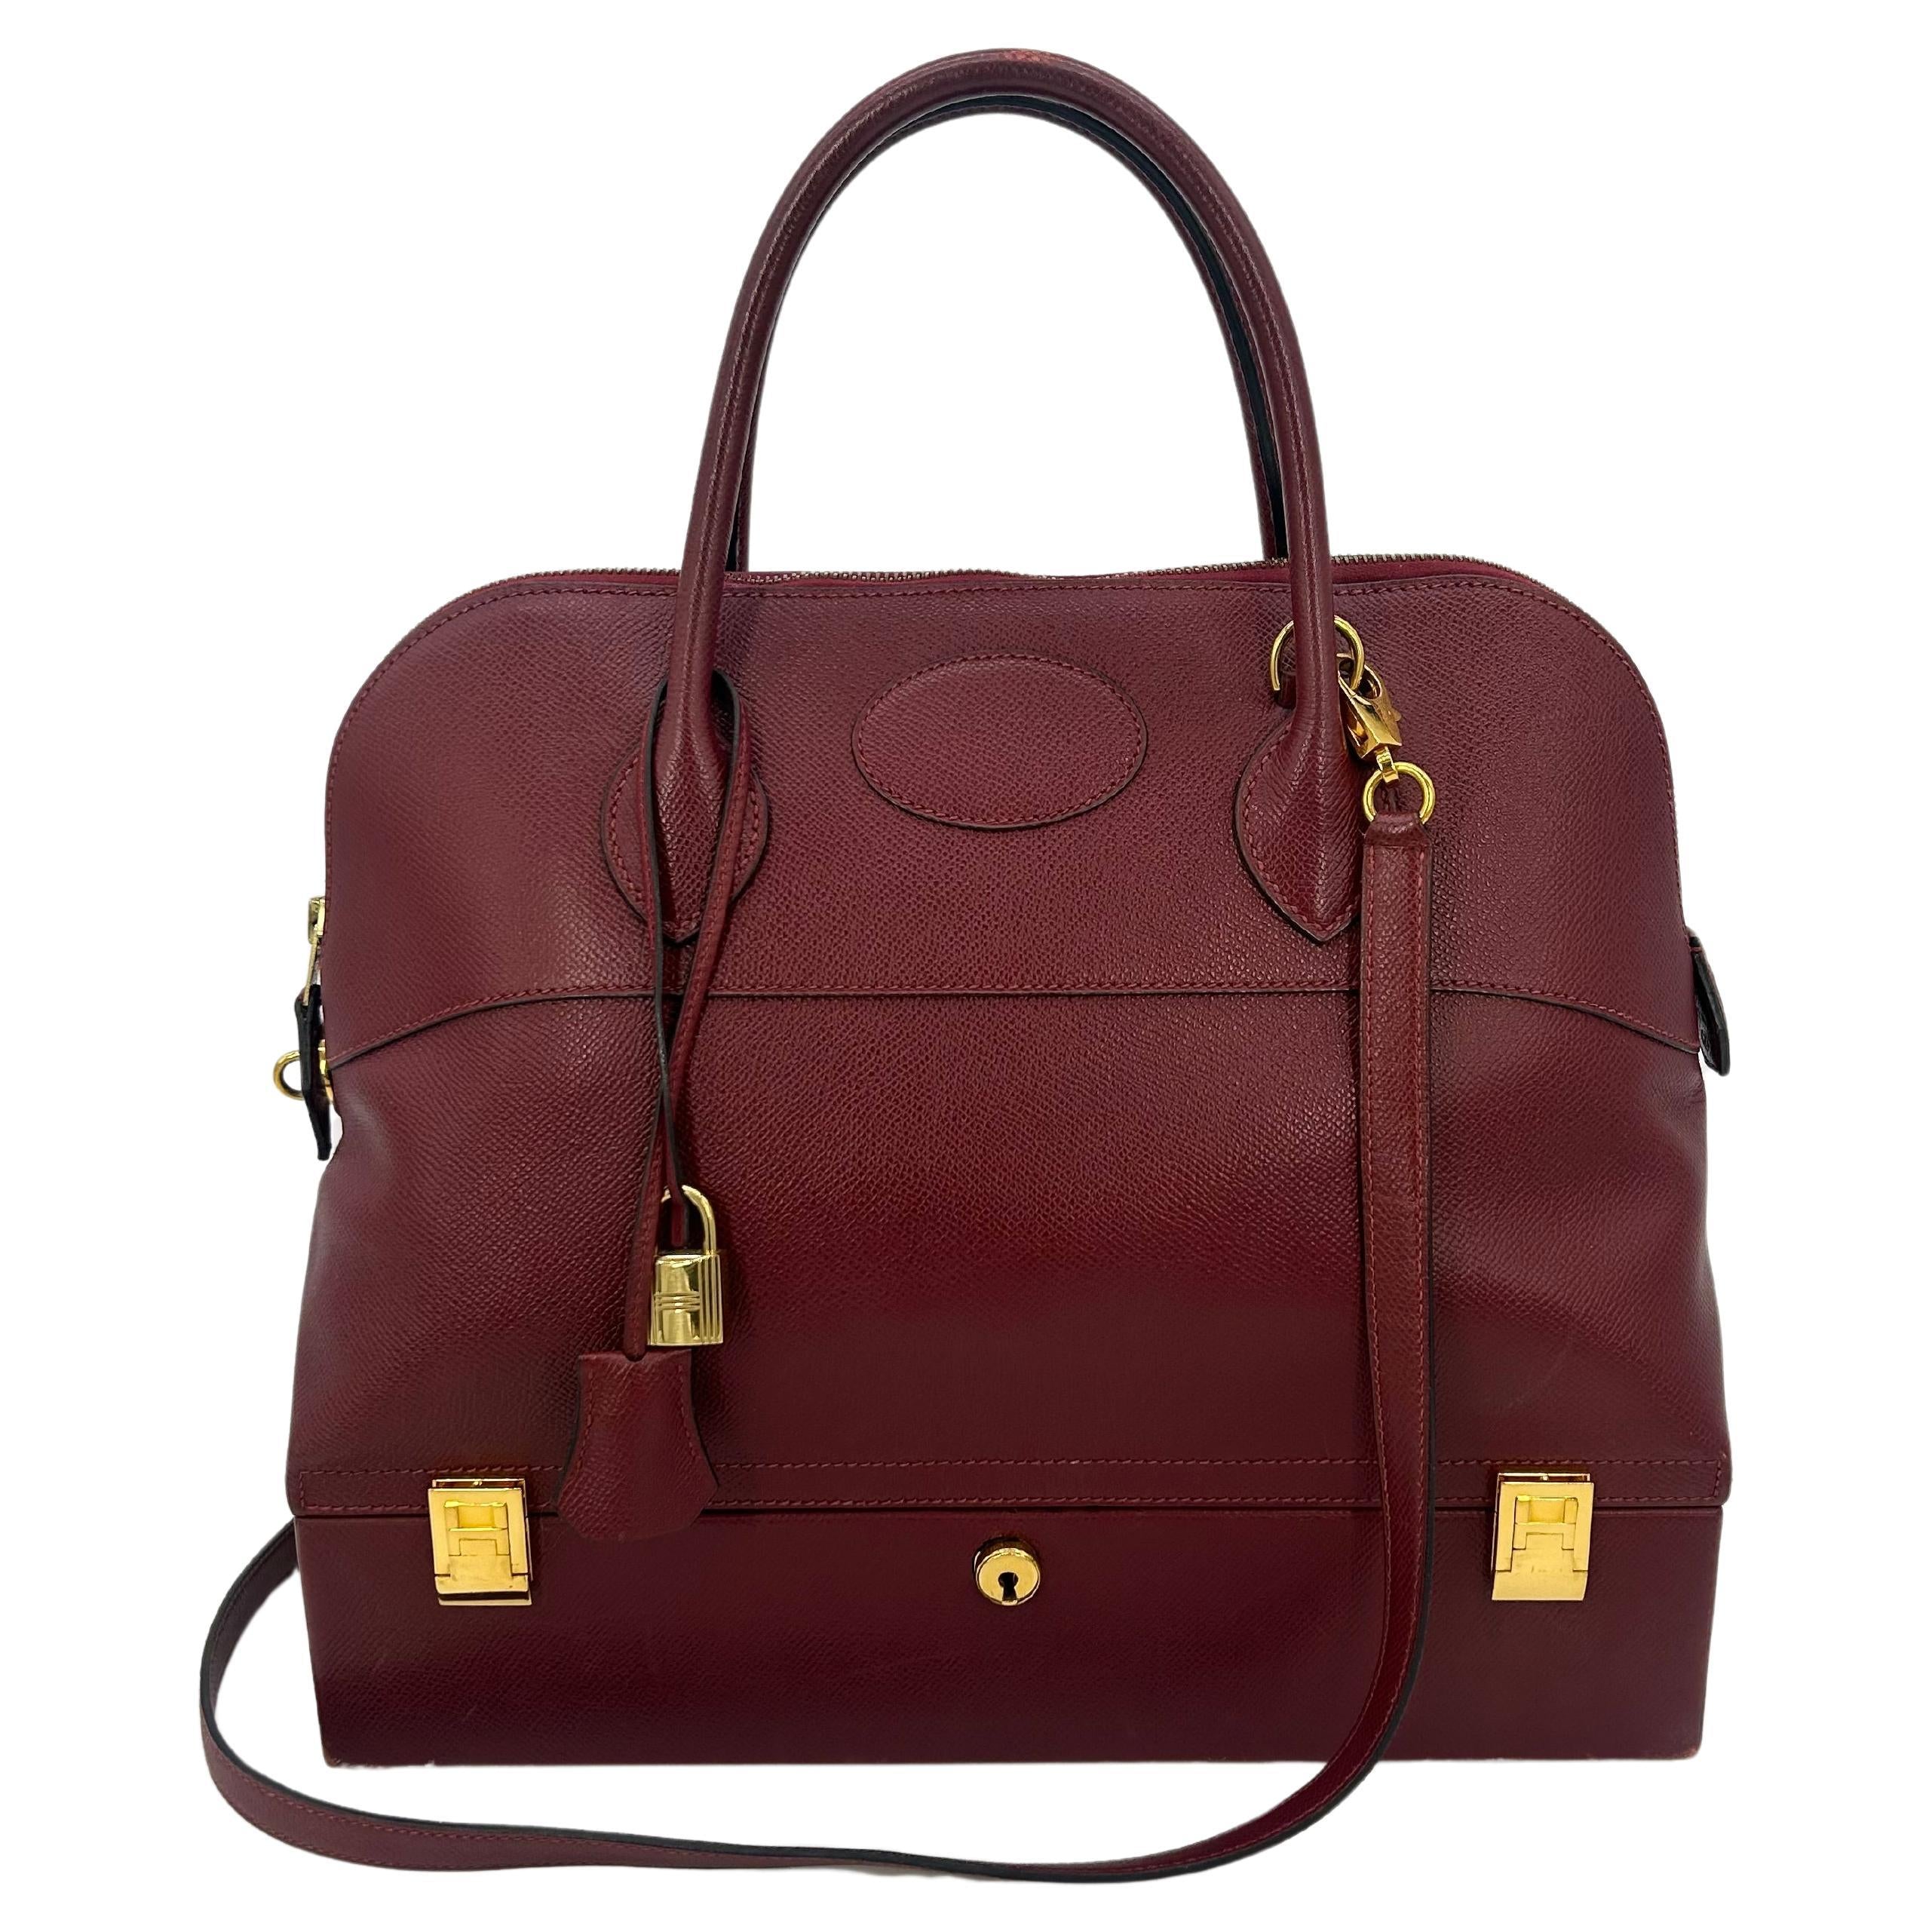 Rouge Epsom Leather Macpherson Bag C1990s